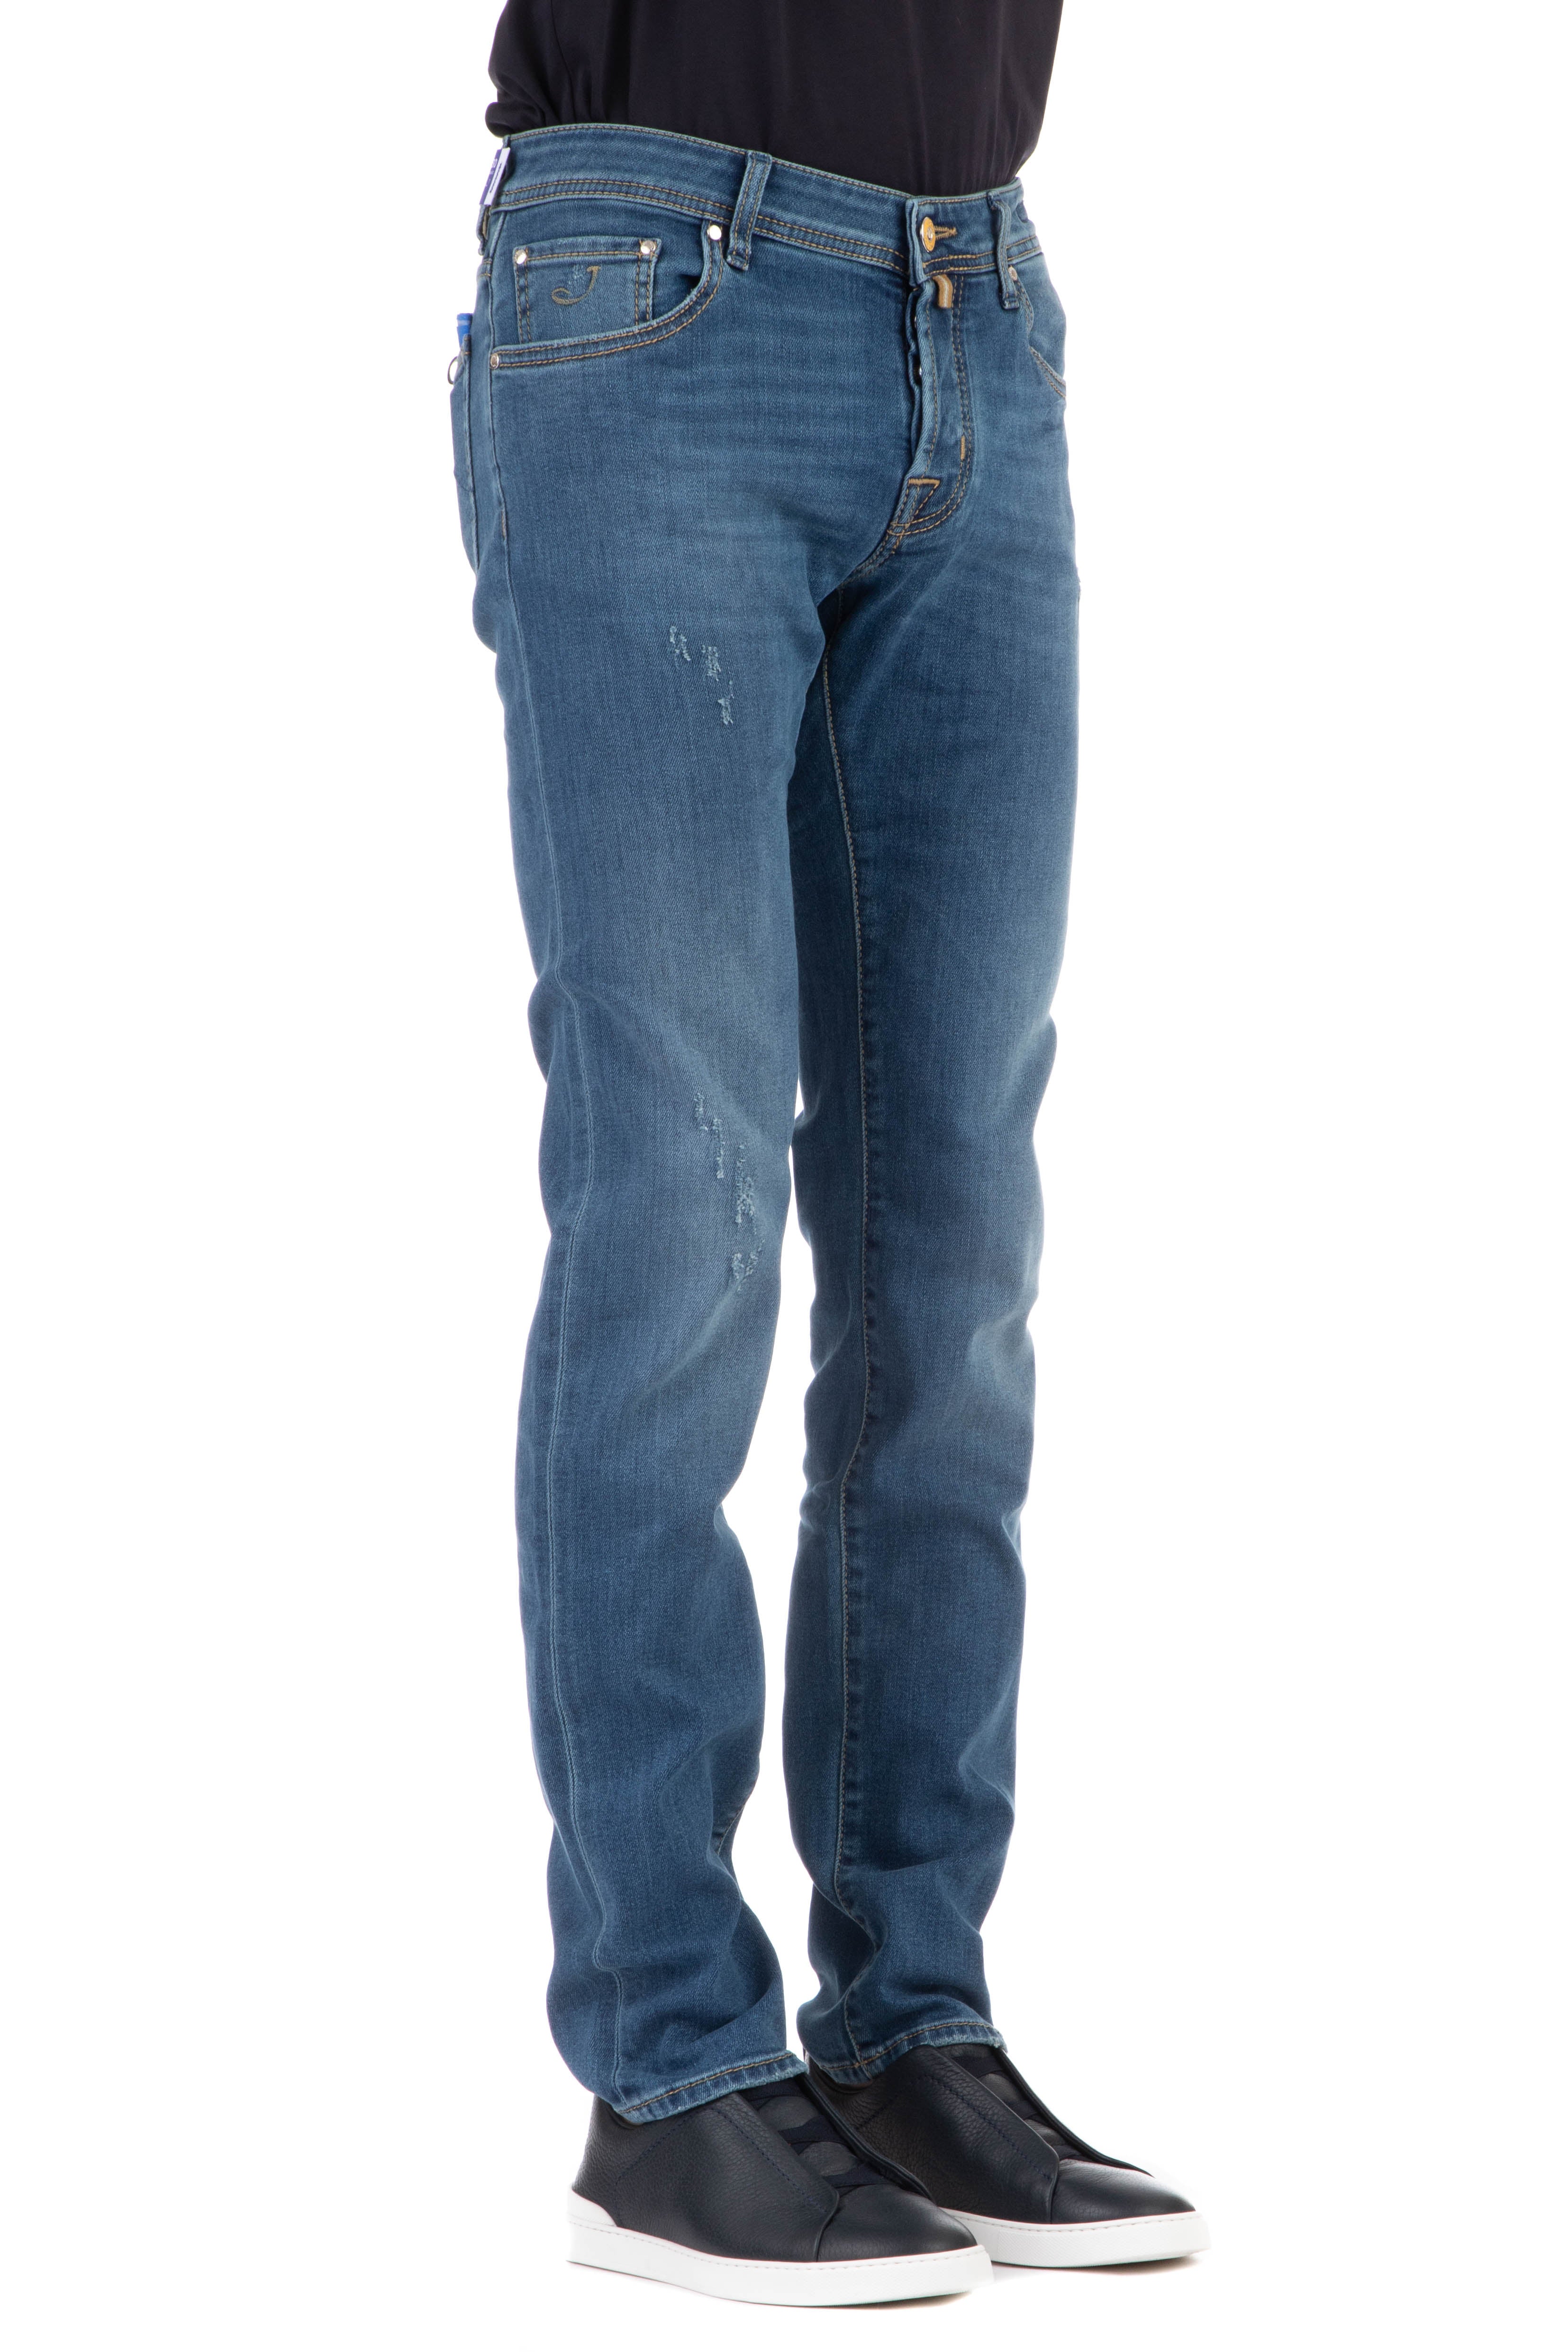 Jeans etichettagialla nick slim fit